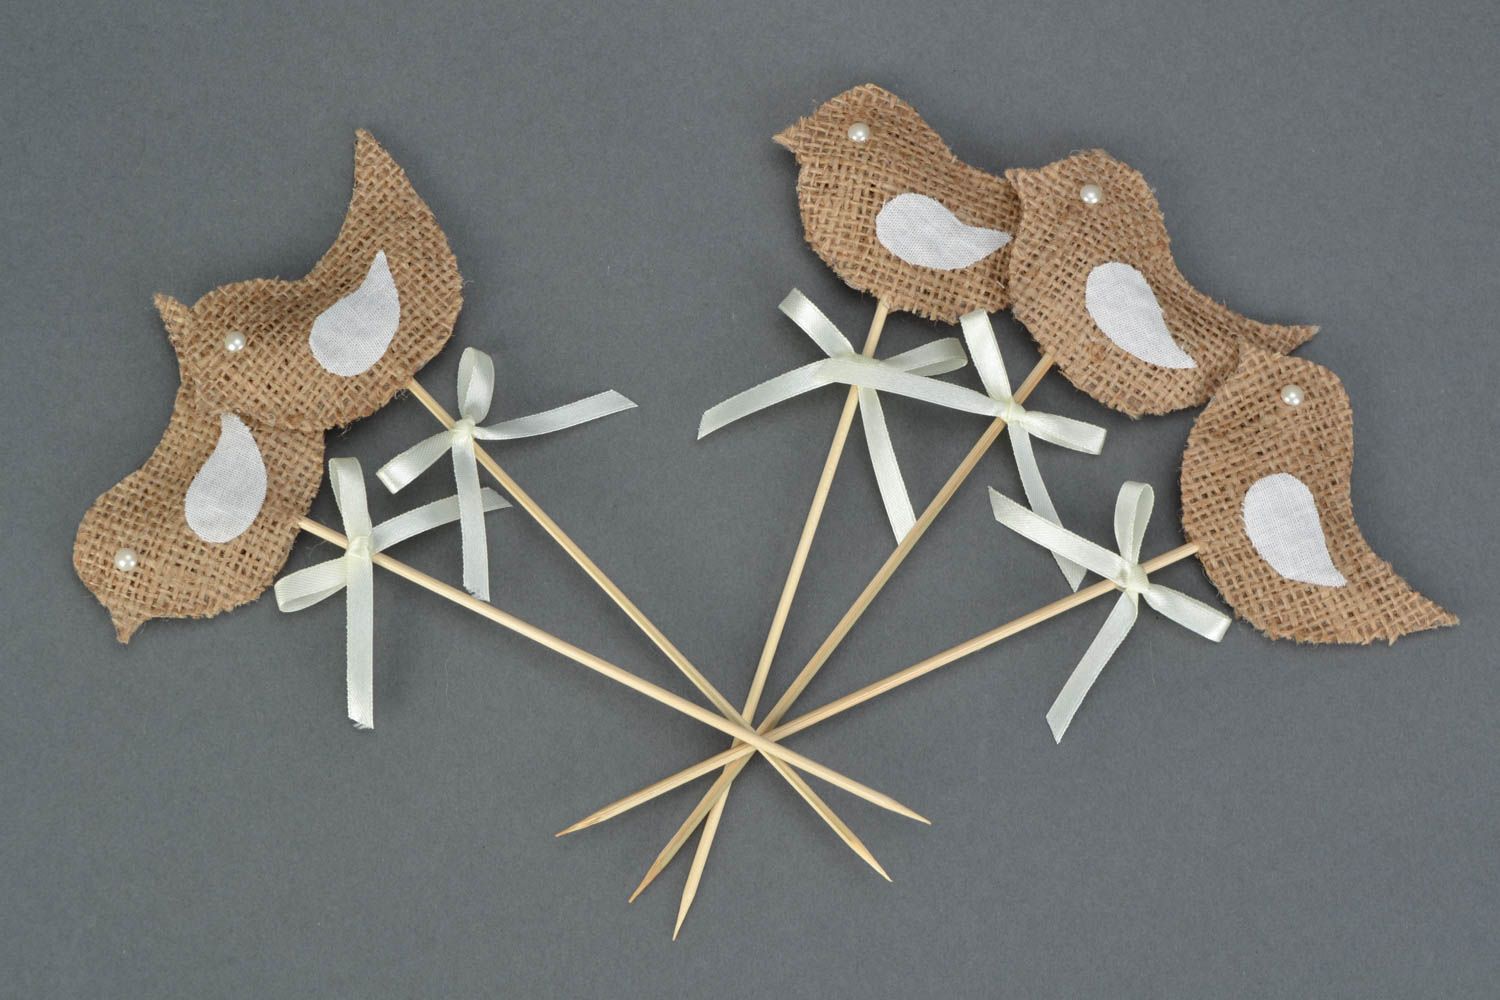 Игрушки-птицы на палочке комплект из 5 штук бежевые милые для декора хэнд мейд фото 1